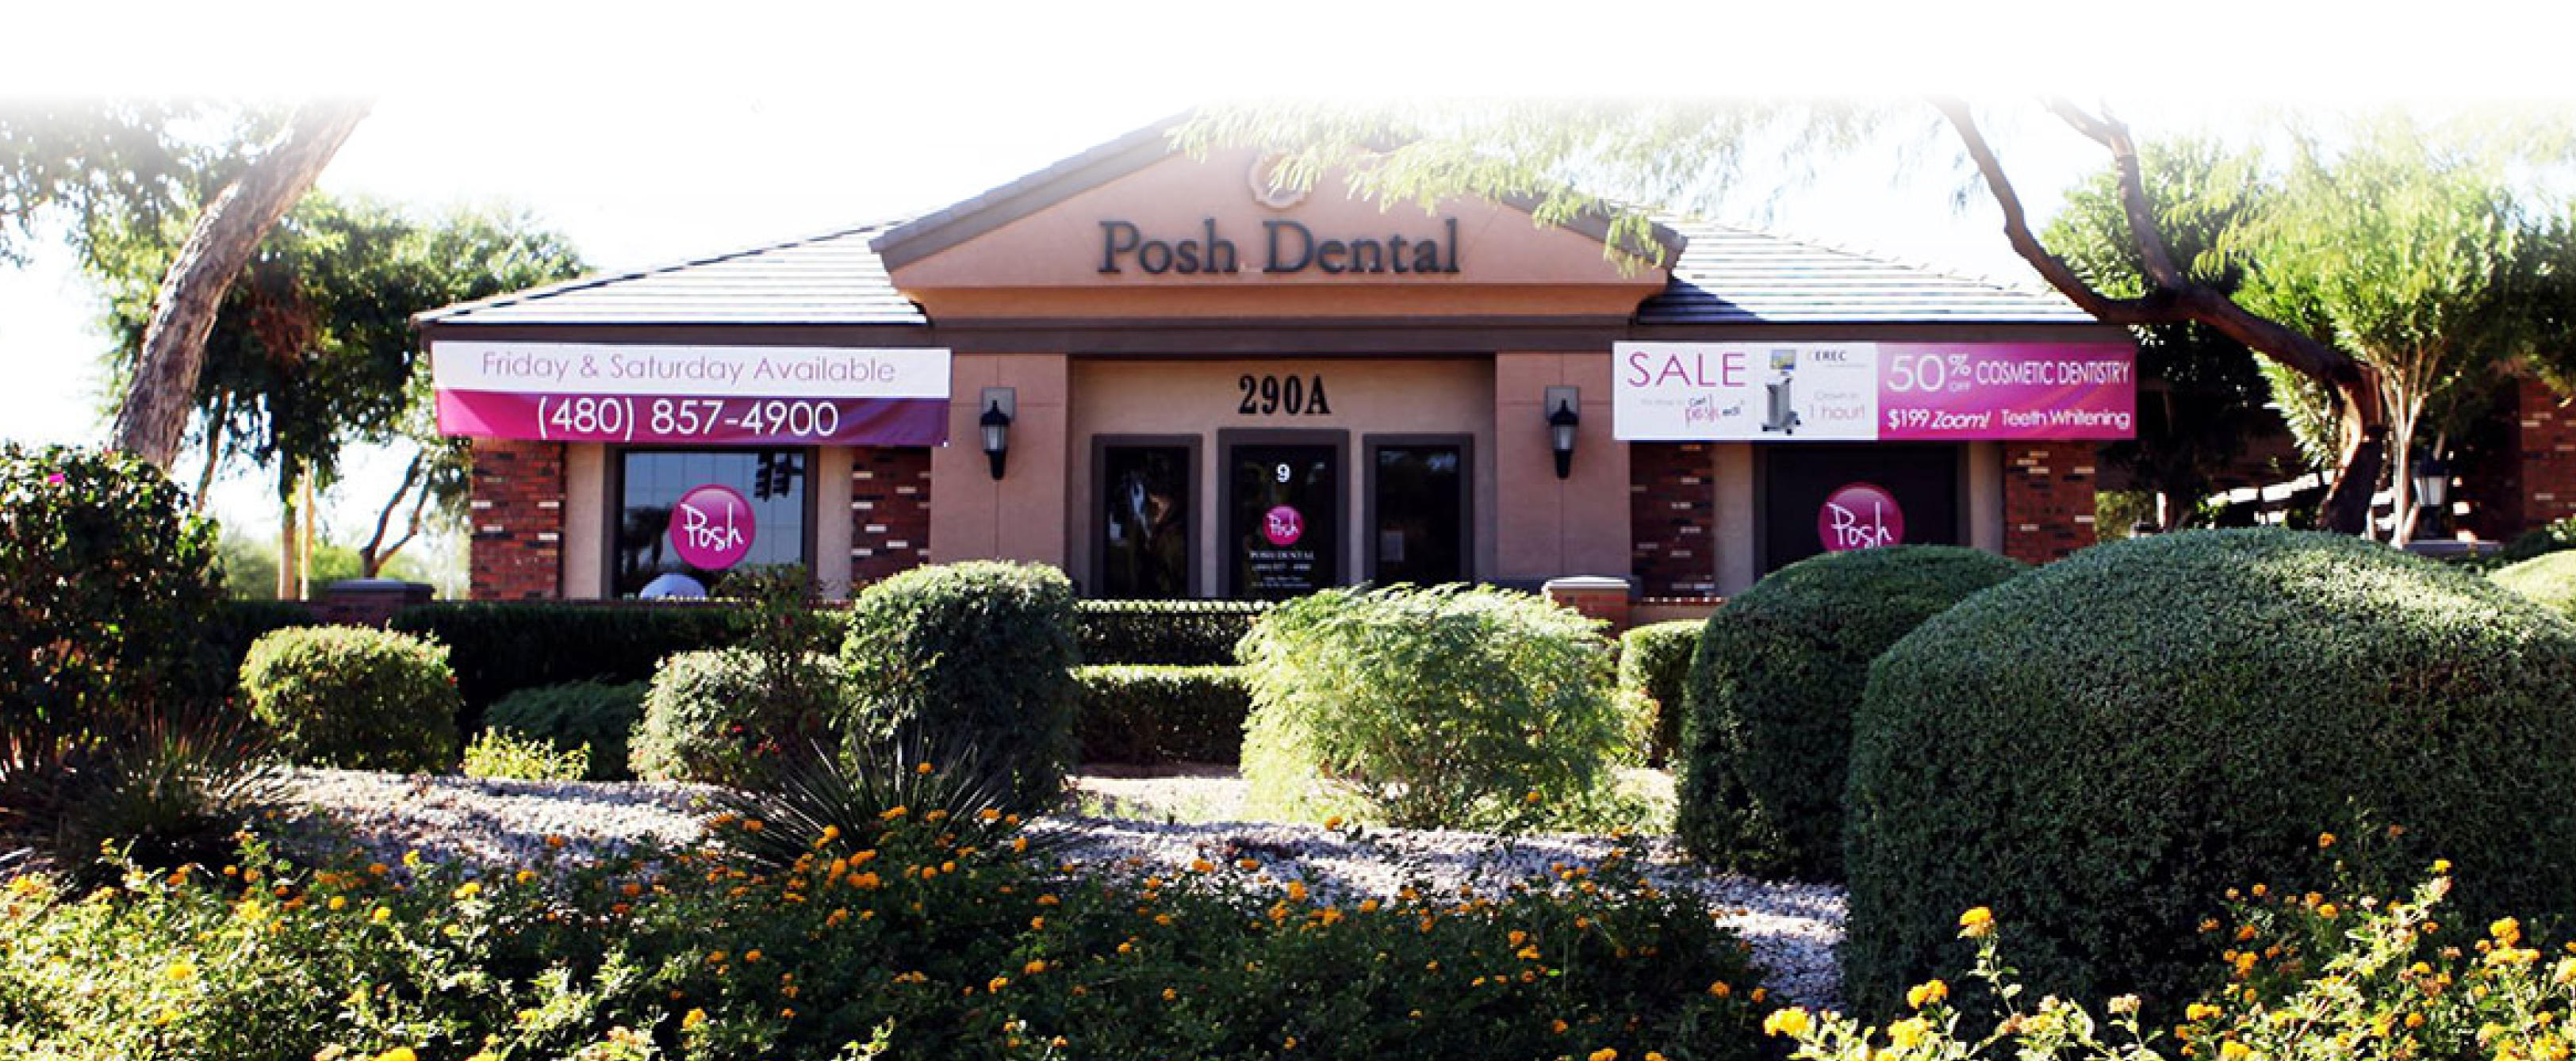 Posh Dental Photo